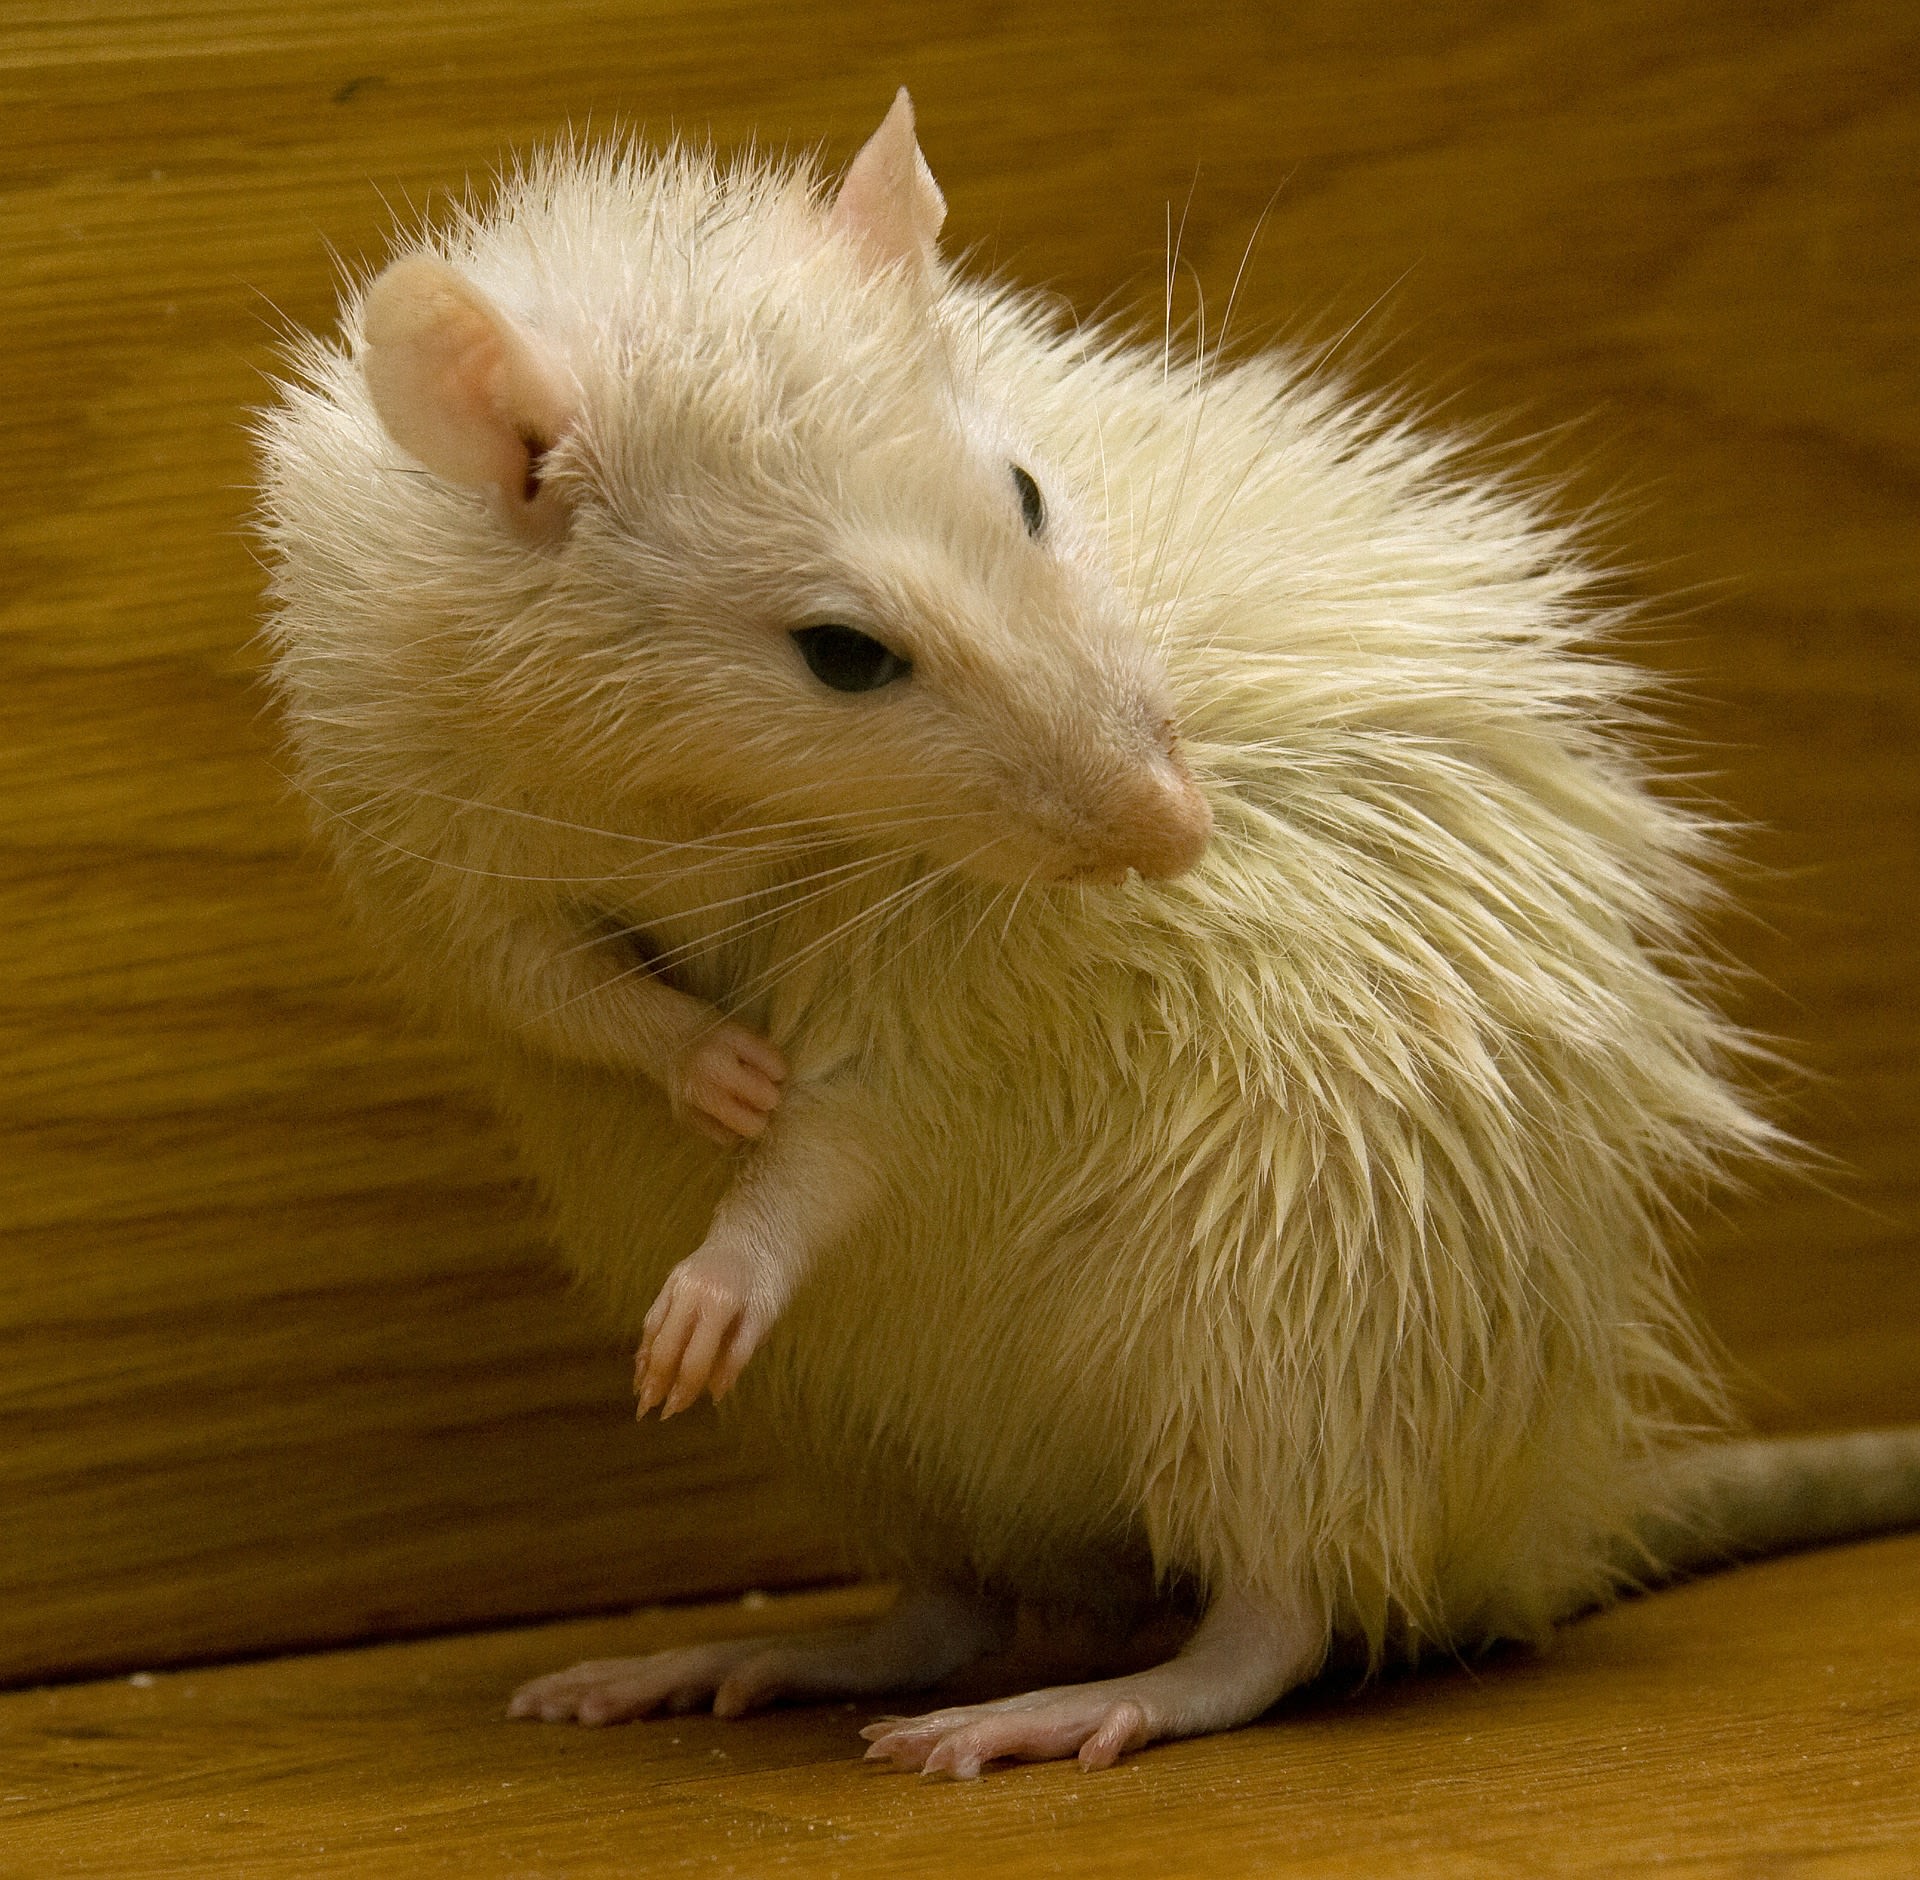 Myši i potkani patří mezi velice čistotná zvířata.